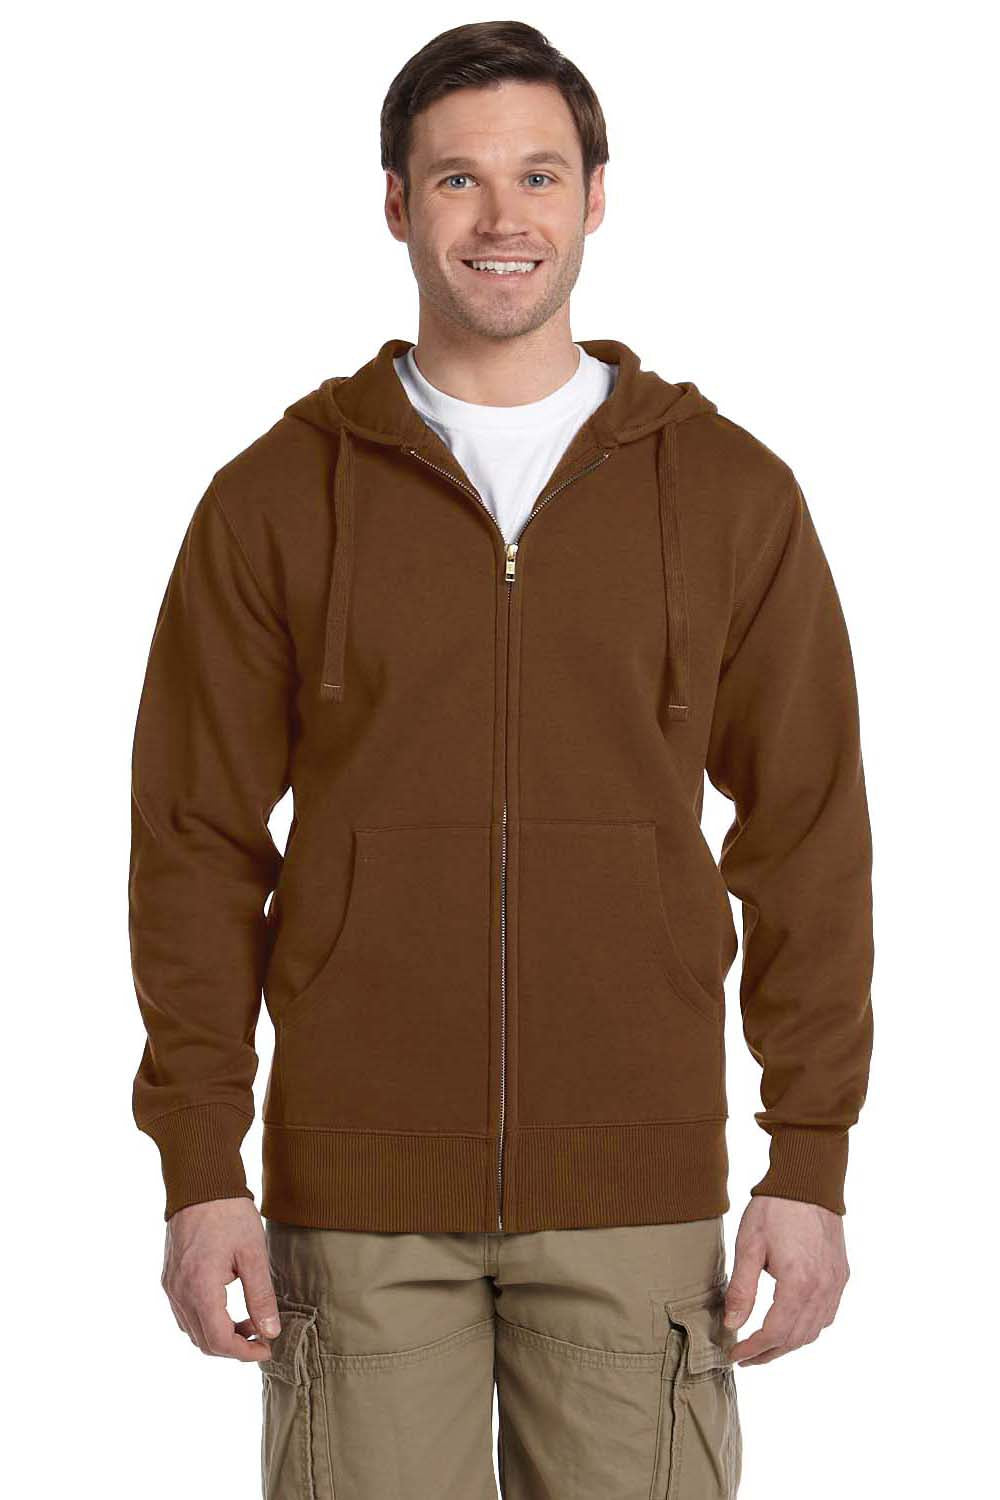 Econscious EC5650 Mens Full Zip Hooded Sweatshirt Hoodie Legacy Brown Front